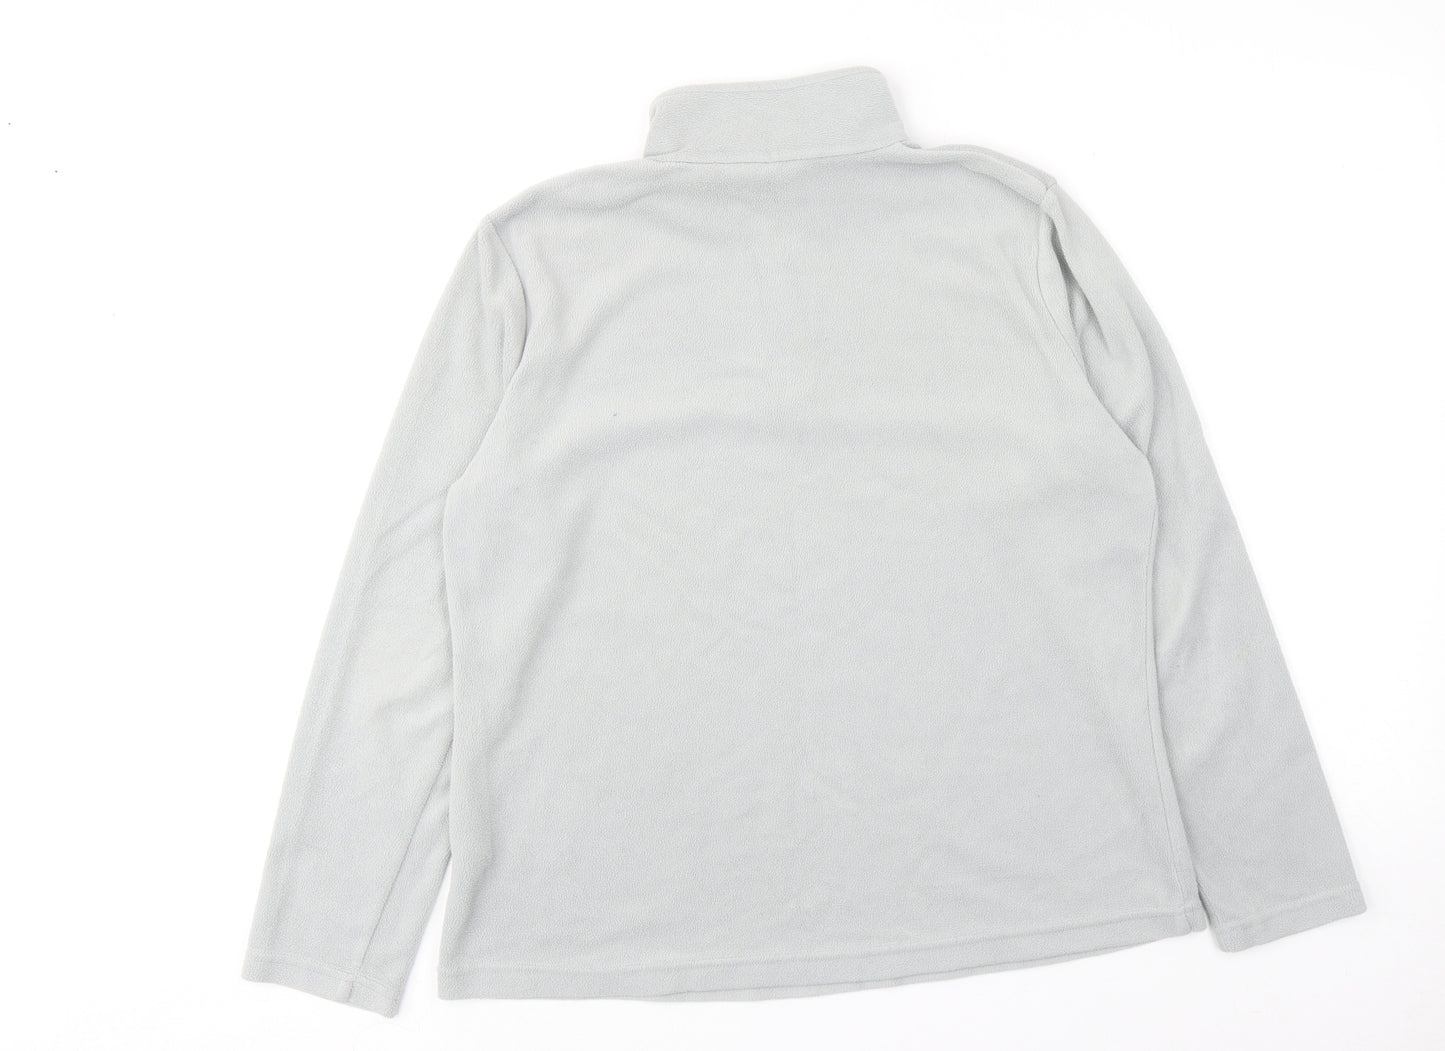 Regatta Womens Grey Polyester Pullover Sweatshirt Size 16 Zip